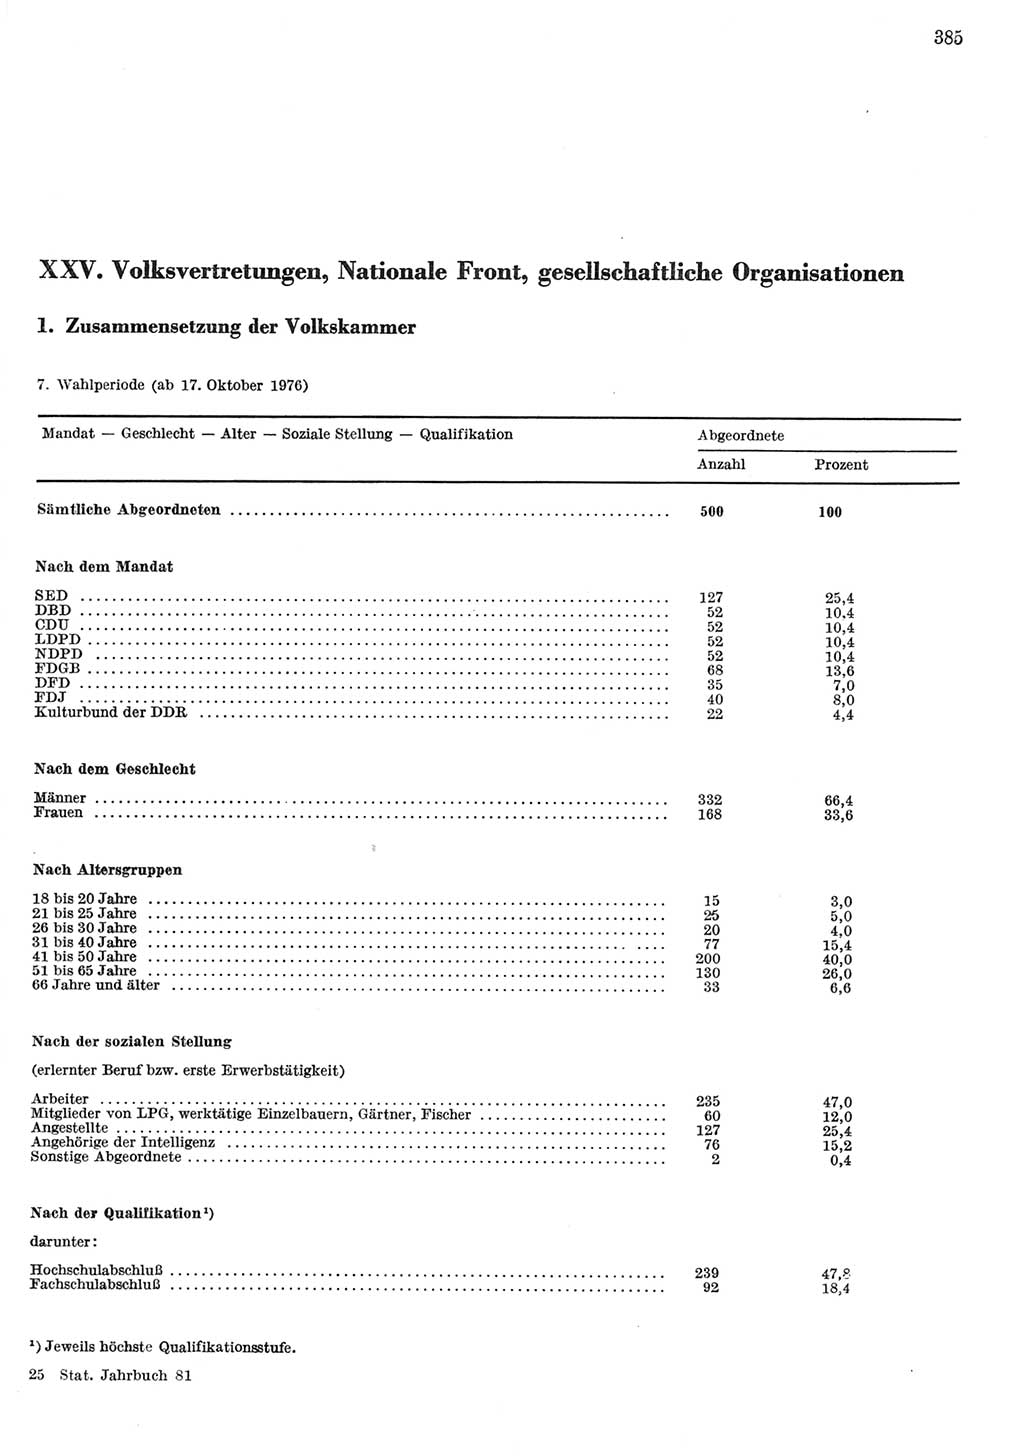 Statistisches Jahrbuch der Deutschen Demokratischen Republik (DDR) 1981, Seite 385 (Stat. Jb. DDR 1981, S. 385)